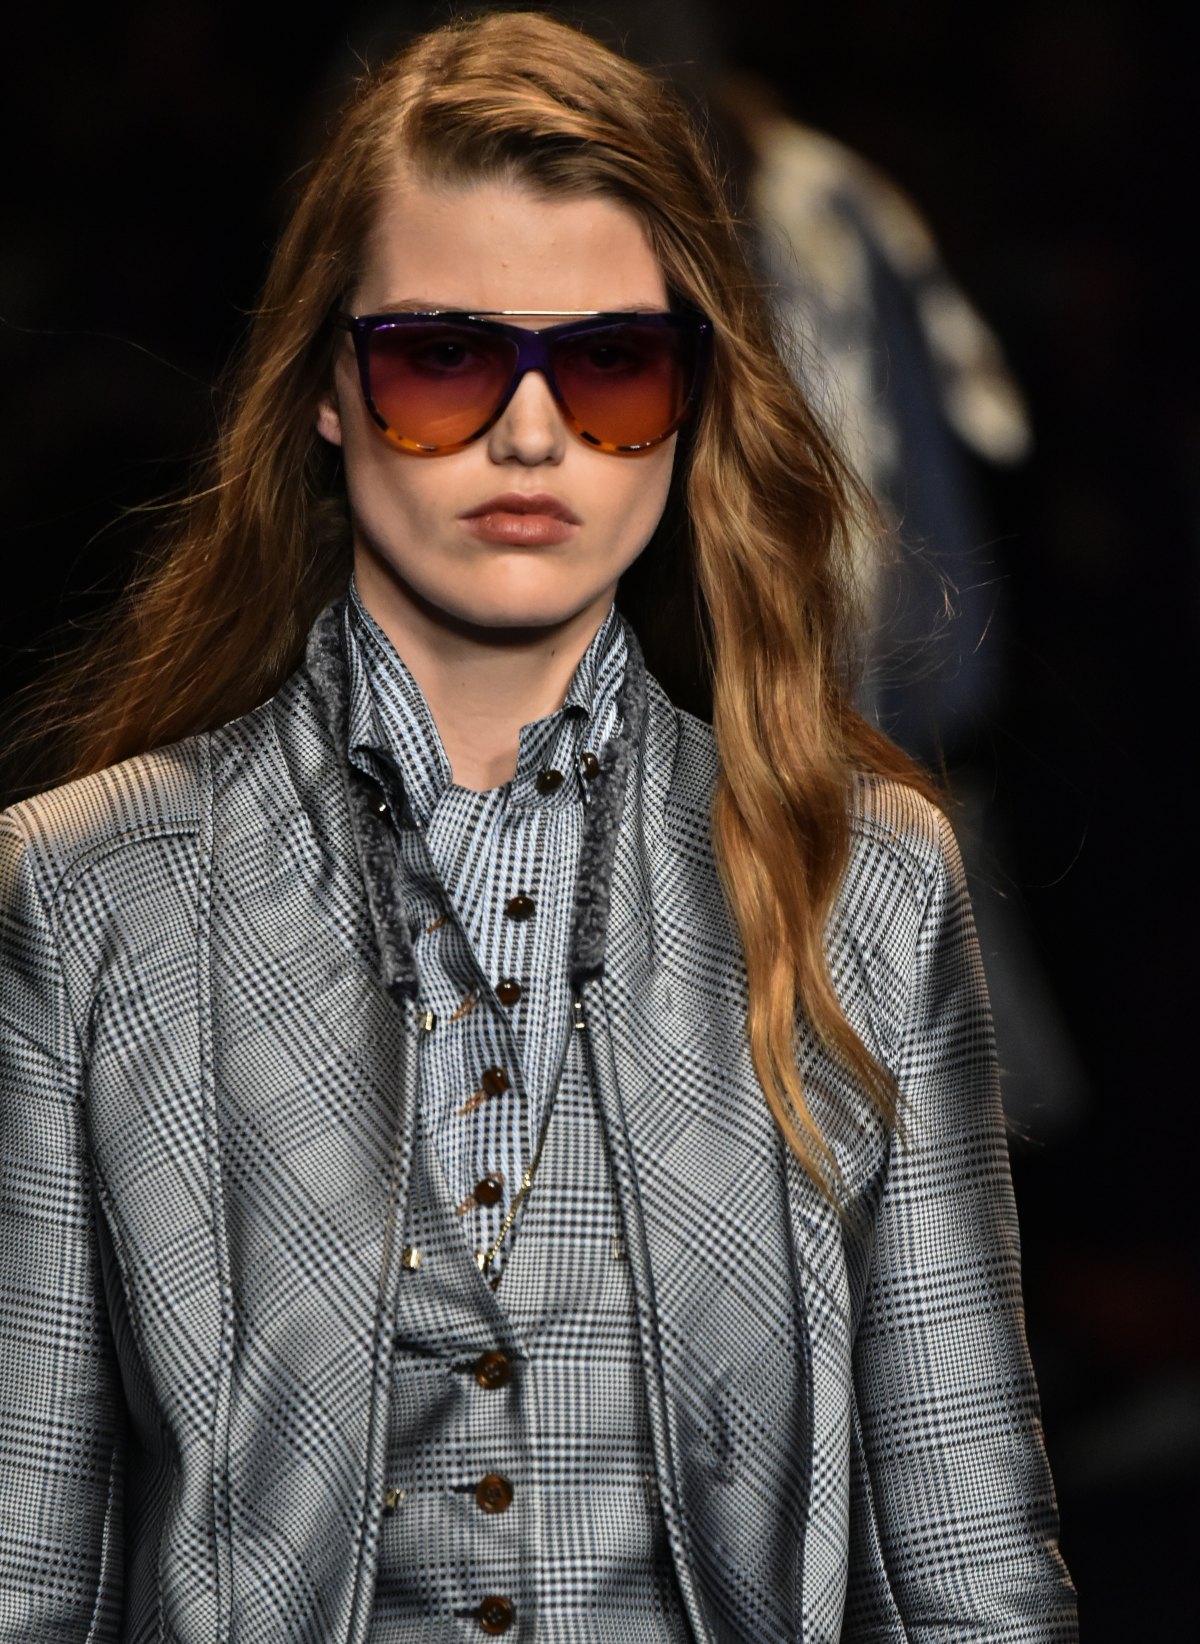 Designer Sunglasses in grey suit